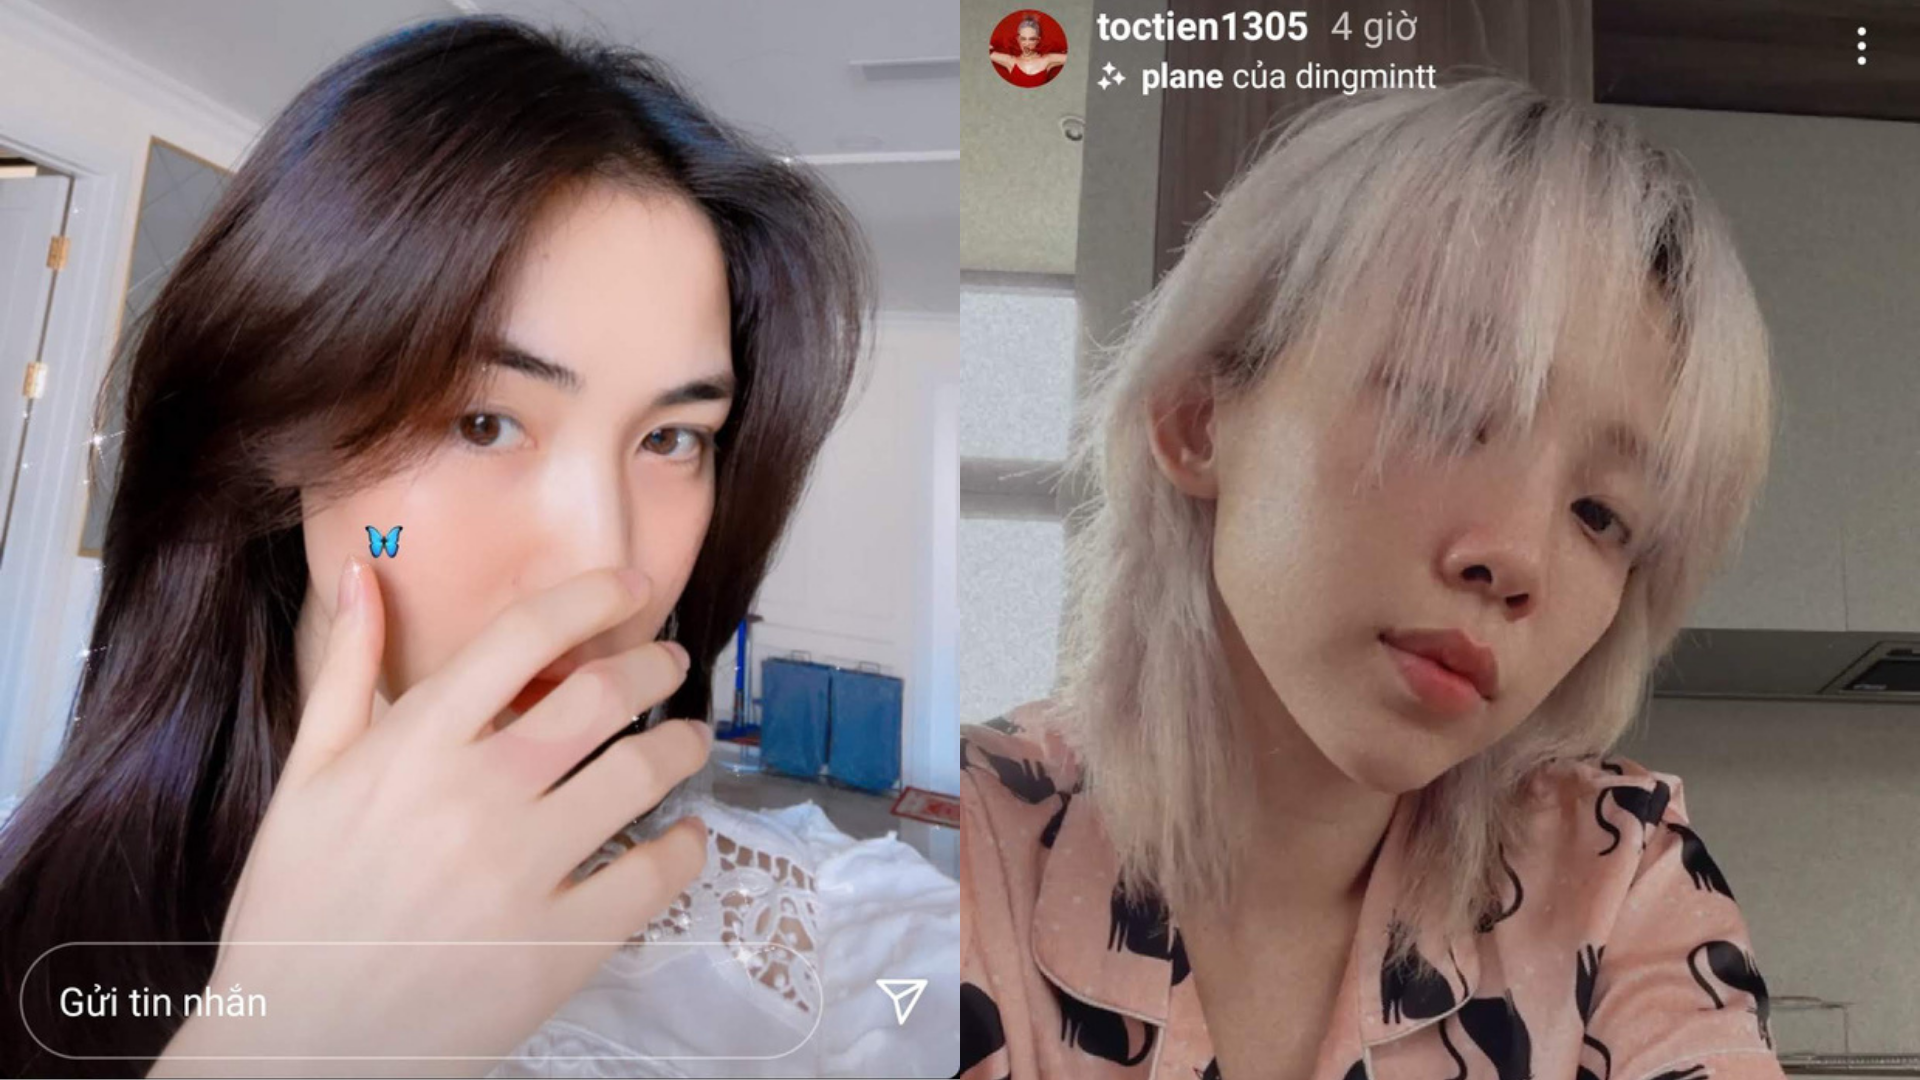 Sao Việt và chuyện tóc tai mùa dịch: Hòa Minzy mừng vì tóc mọc dài, Tóc Tiên ngán ngẩm vì đầu 2 thứ tóc